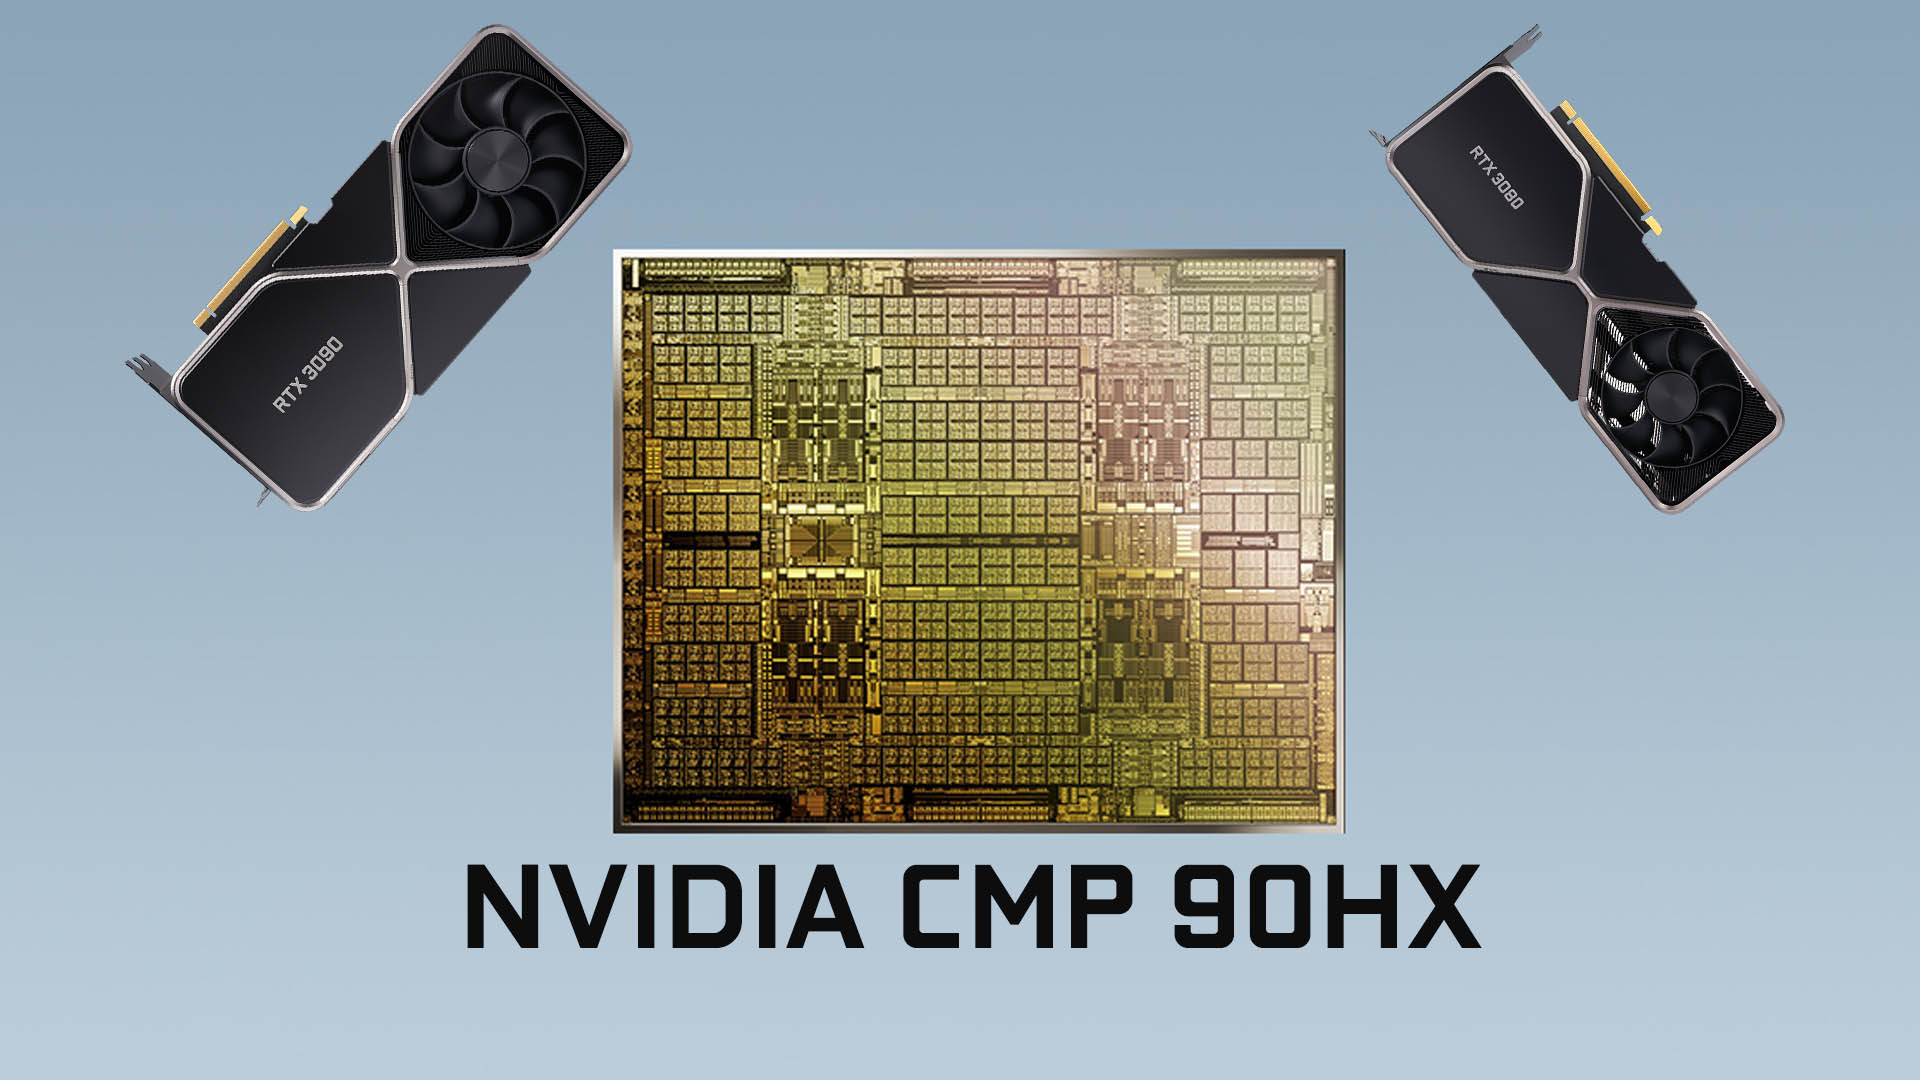 マイニング専用GPU CMP 90HXはGeForce RTX 3080がベースの模様